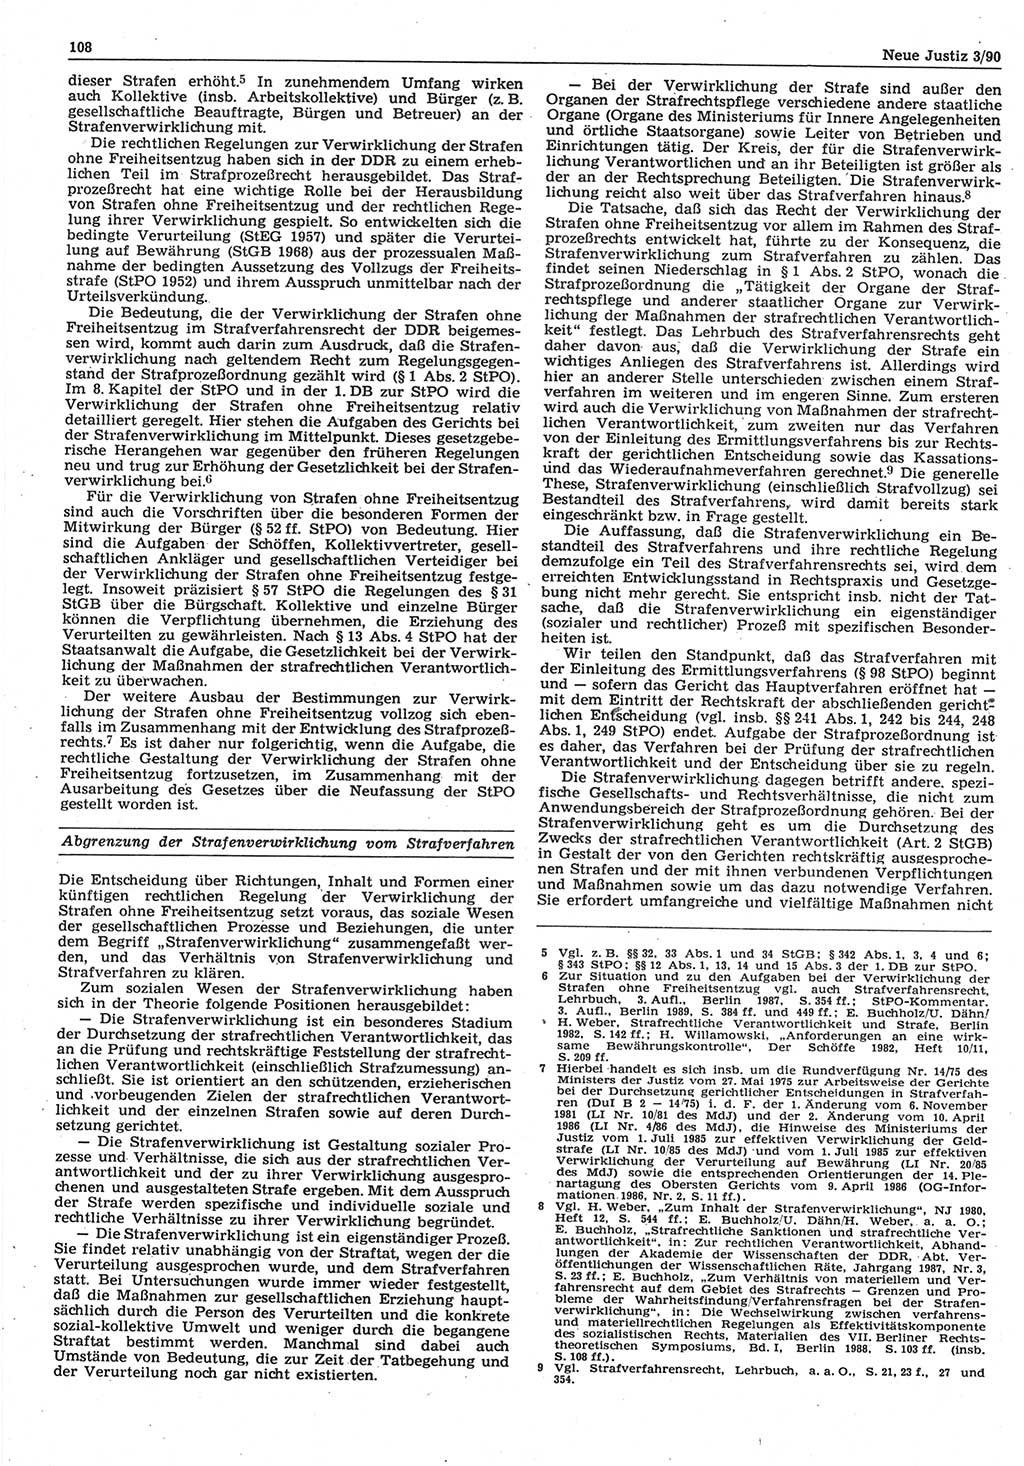 Neue Justiz (NJ), Zeitschrift für Rechtsetzung und Rechtsanwendung [Deutsche Demokratische Republik (DDR)], 44. Jahrgang 1990, Seite 108 (NJ DDR 1990, S. 108)